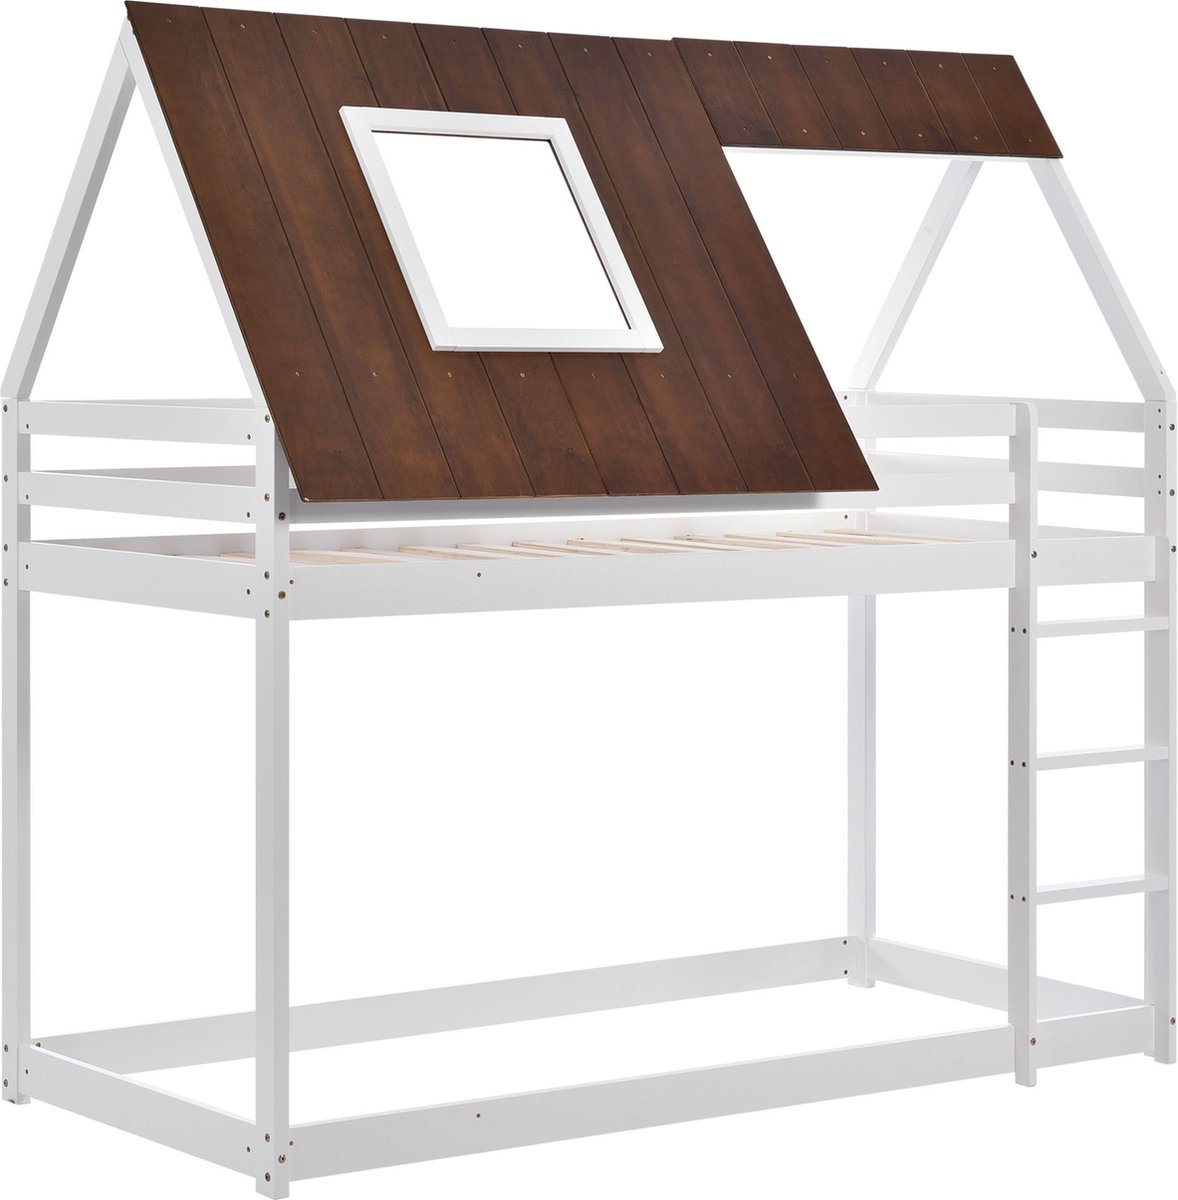 Huisbed stapelbed met rechthoekige ladder- ledikant bed met bruin dak- valbeveiliging en hekken-pine houten frame- wit bed (200x90cm)